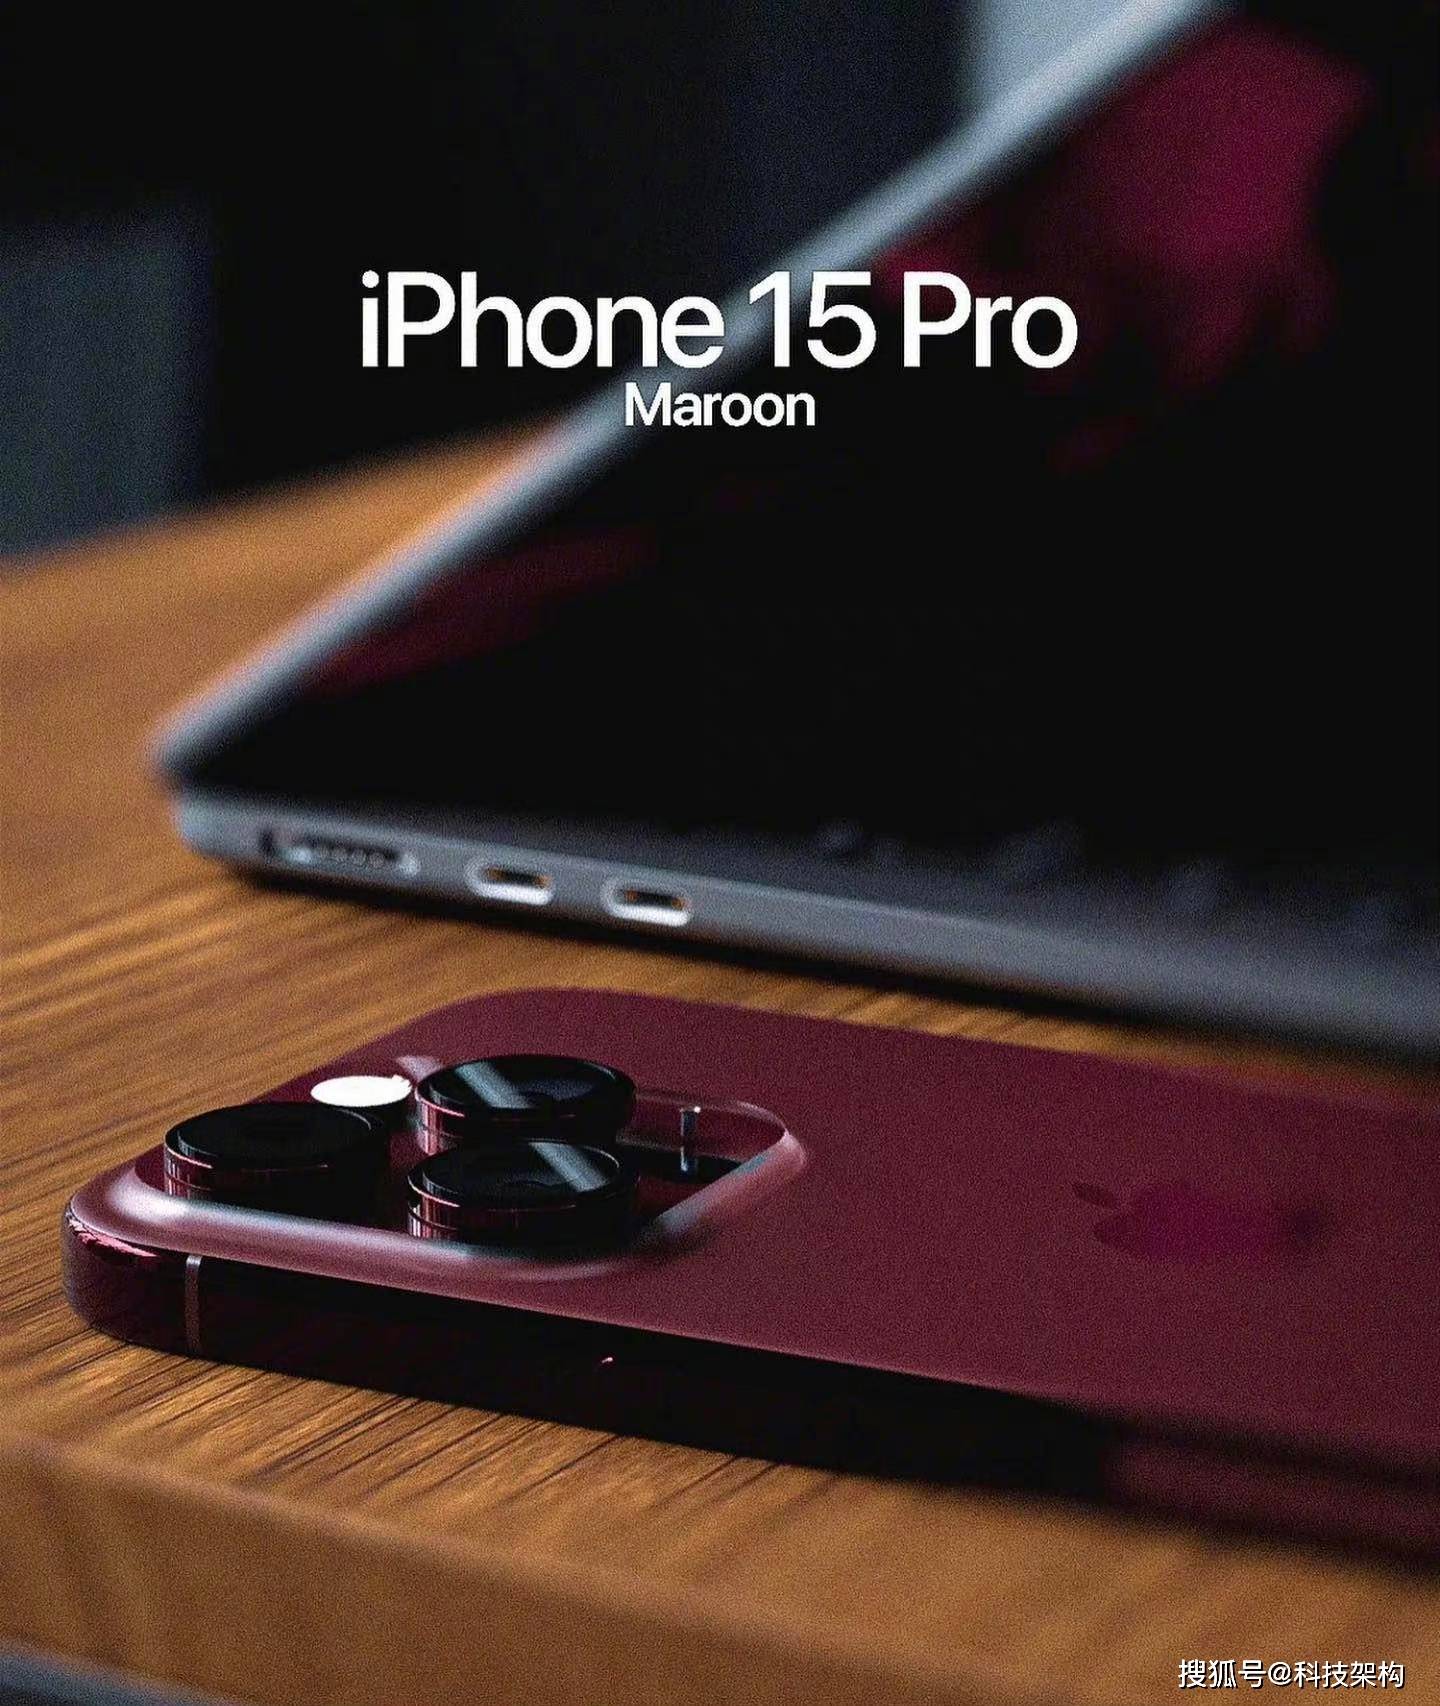 鄂州12333苹果手机版
:iPhone15较前代有一定升级，全系支持灵动岛，大家可以考虑入手